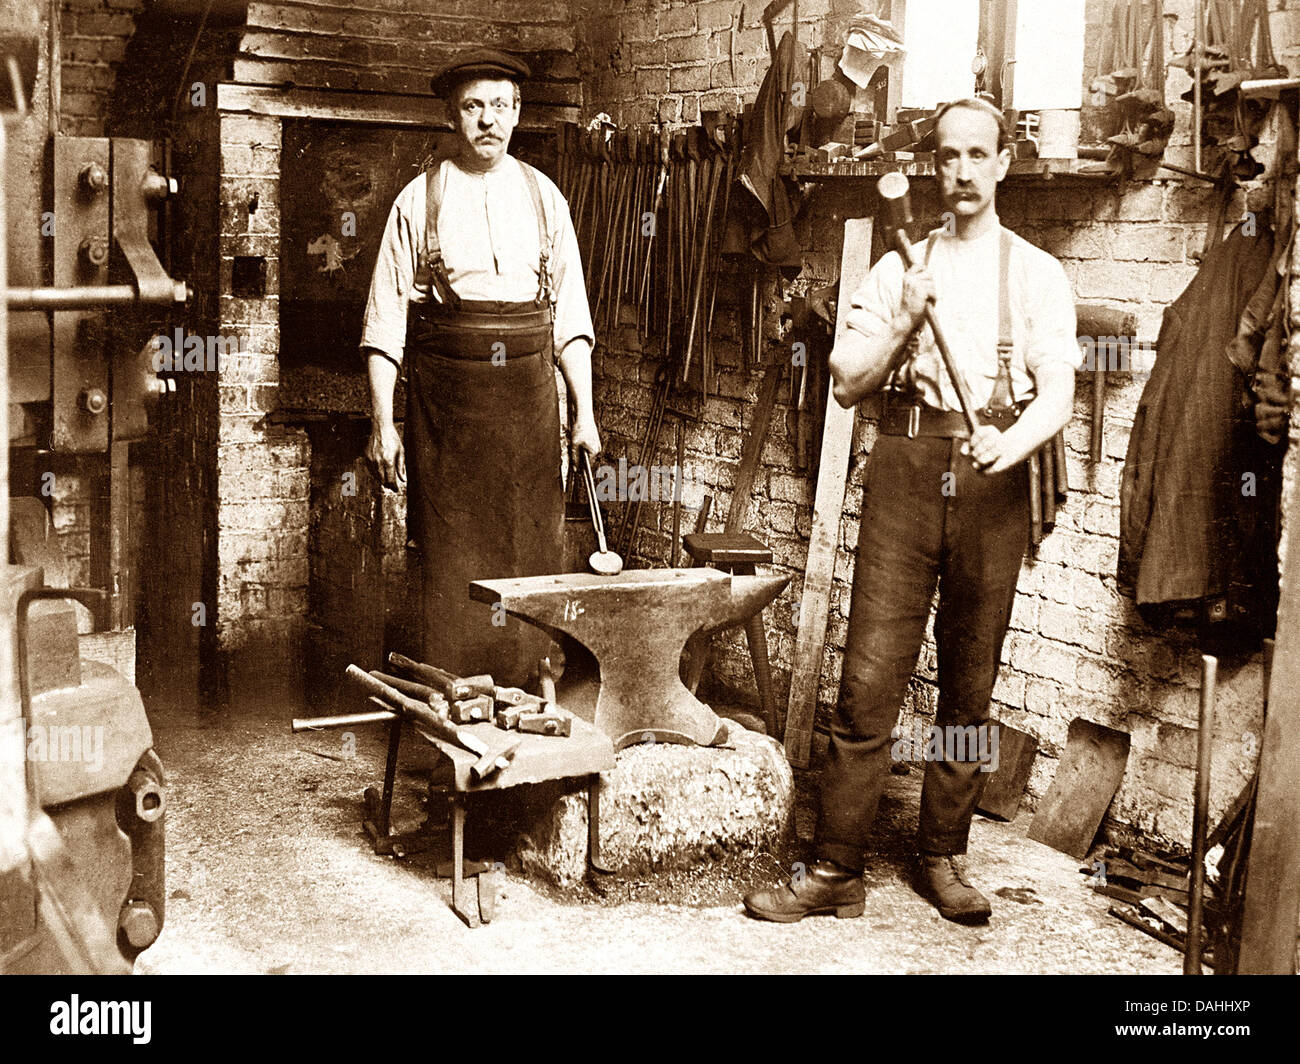 Blacksmith early 1900s Stock Photo